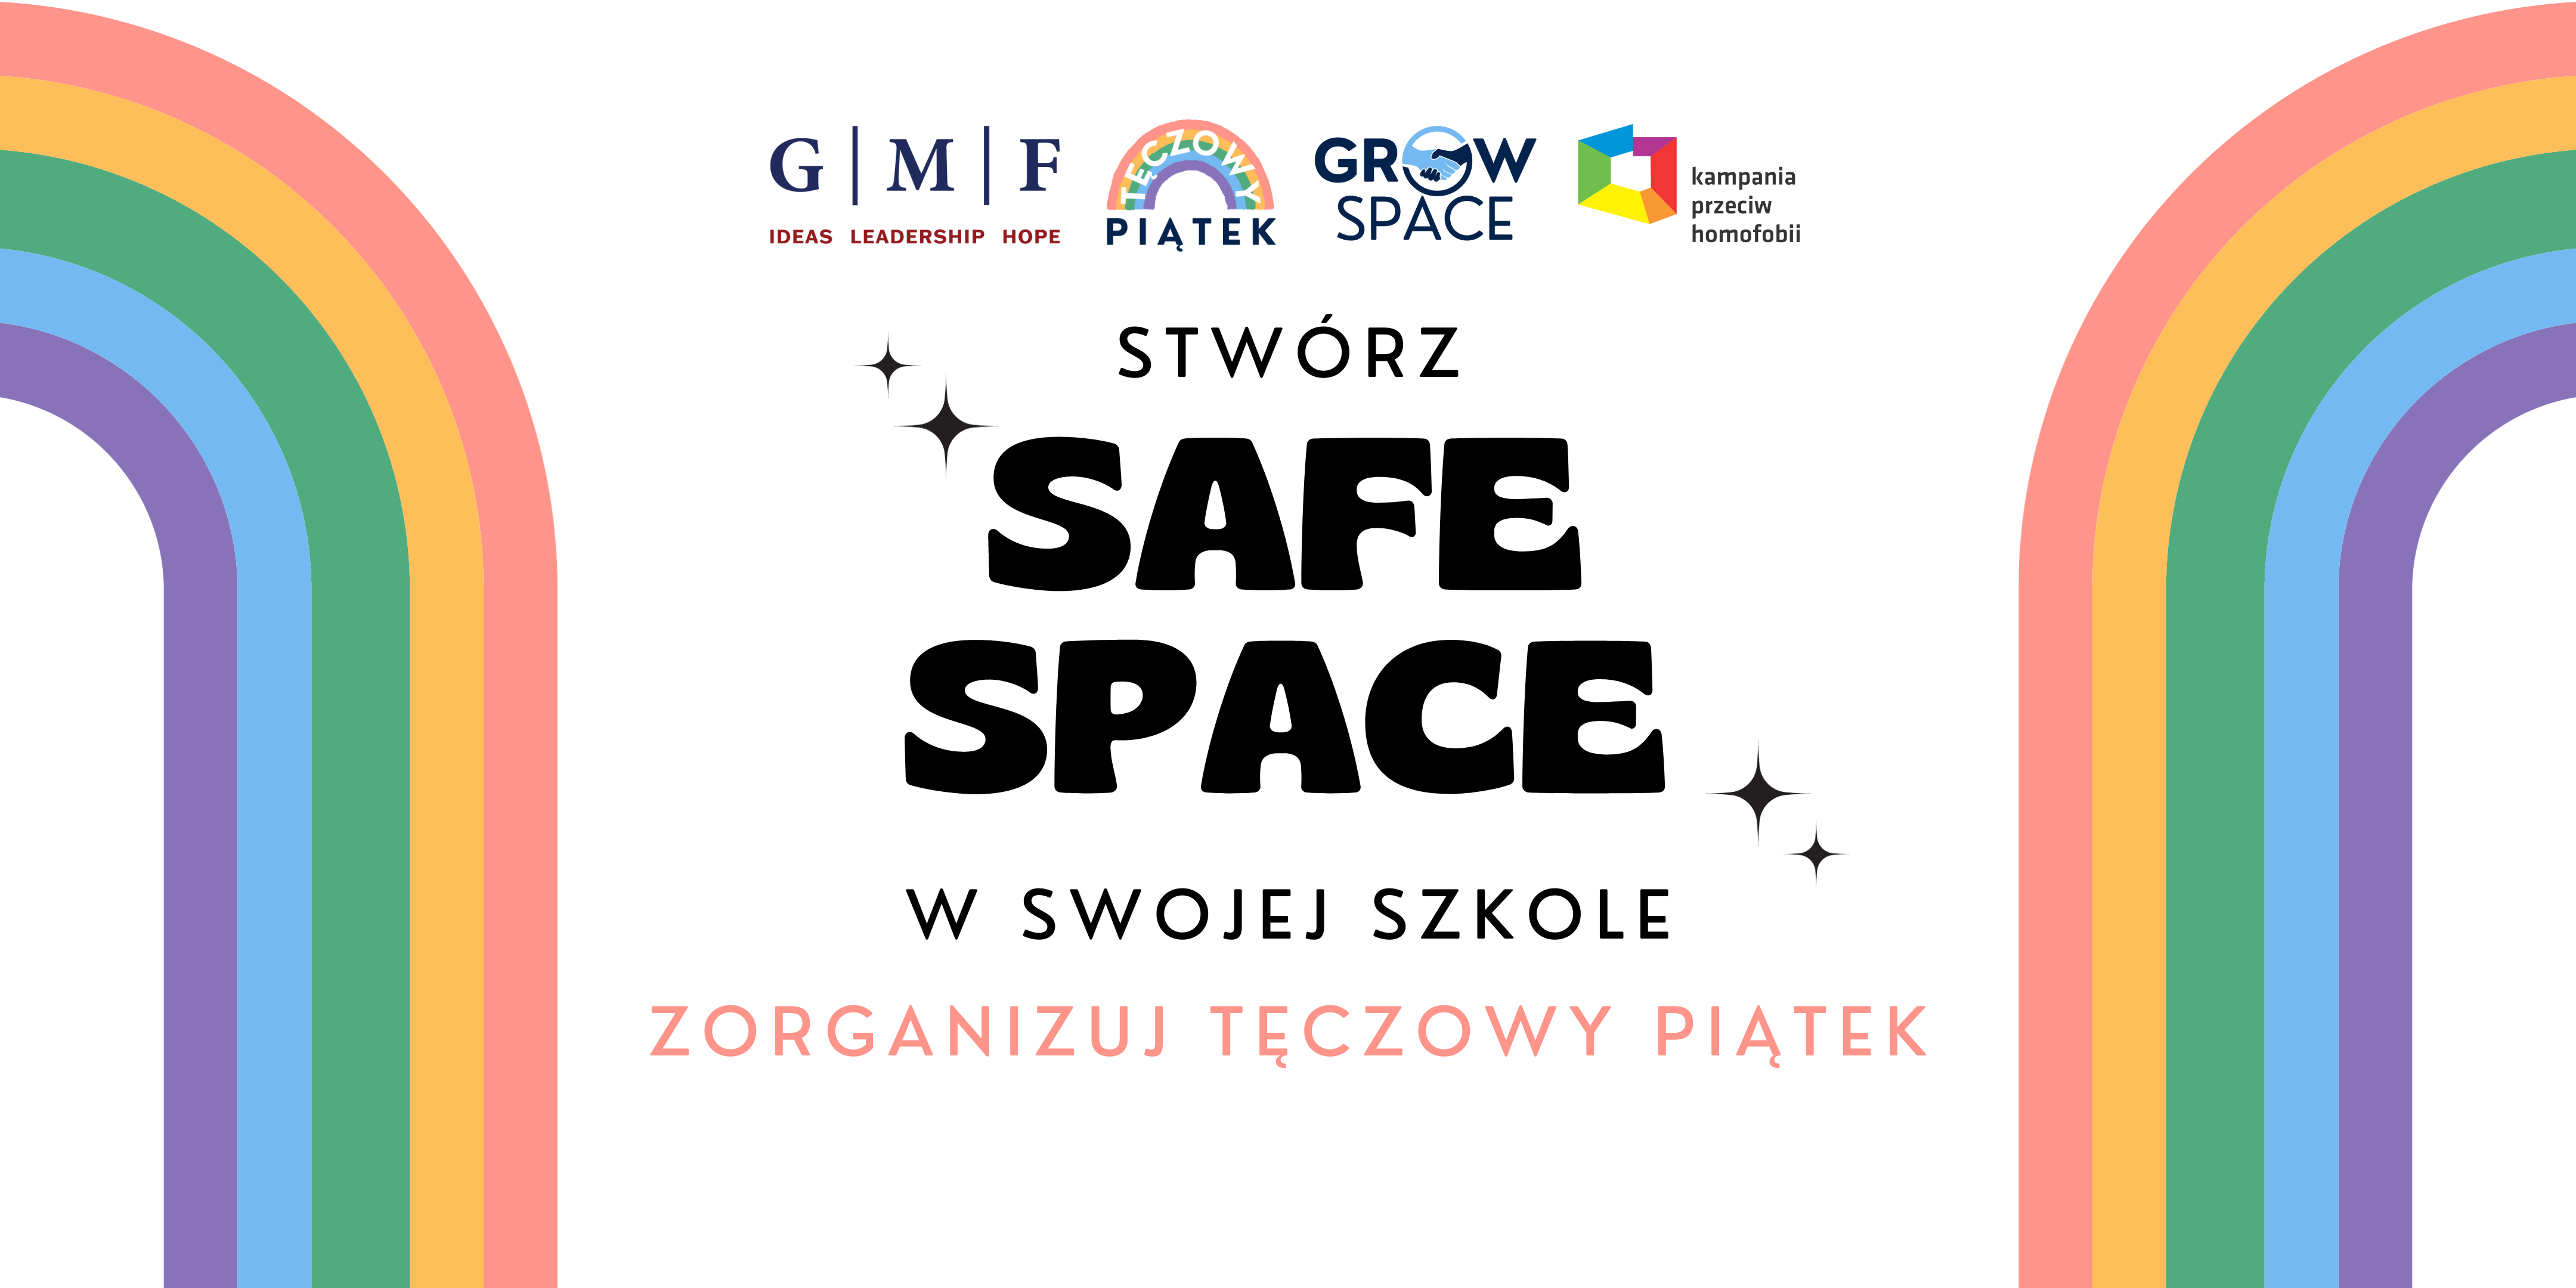 Startuje Tęczowy Piątek w szkołach w całej Polsce